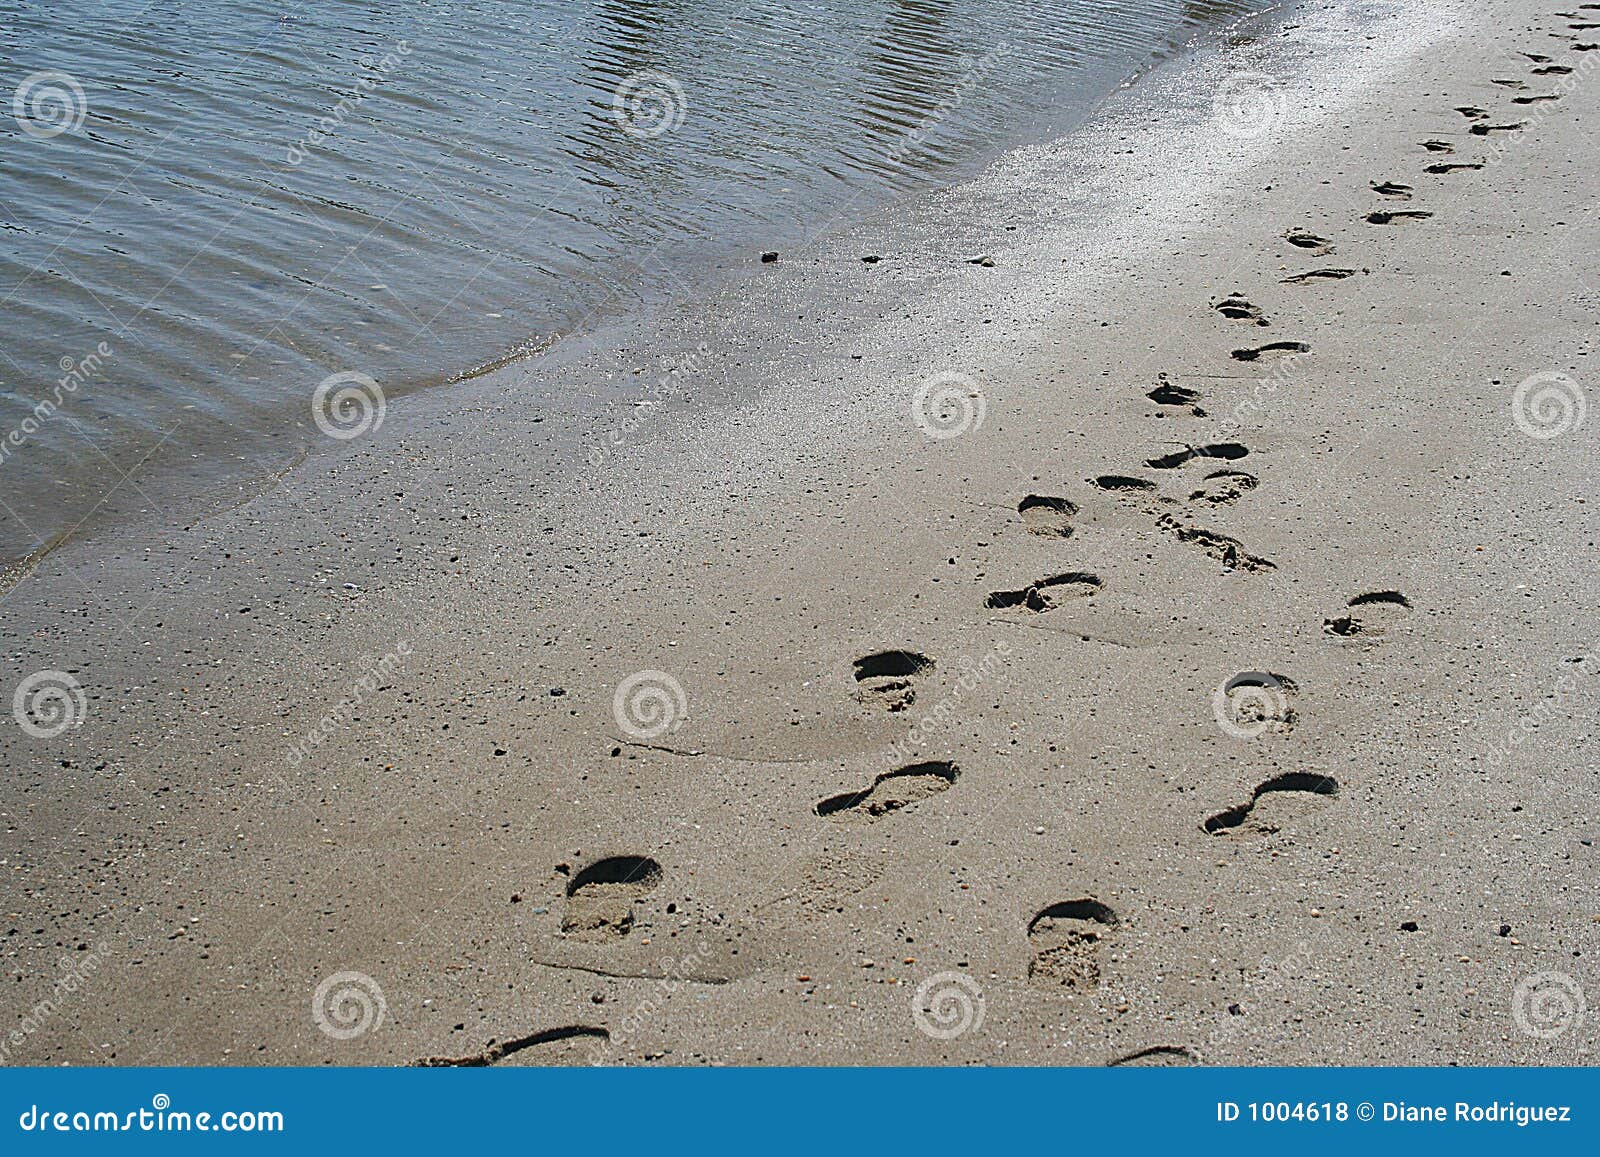 footprints of jesus